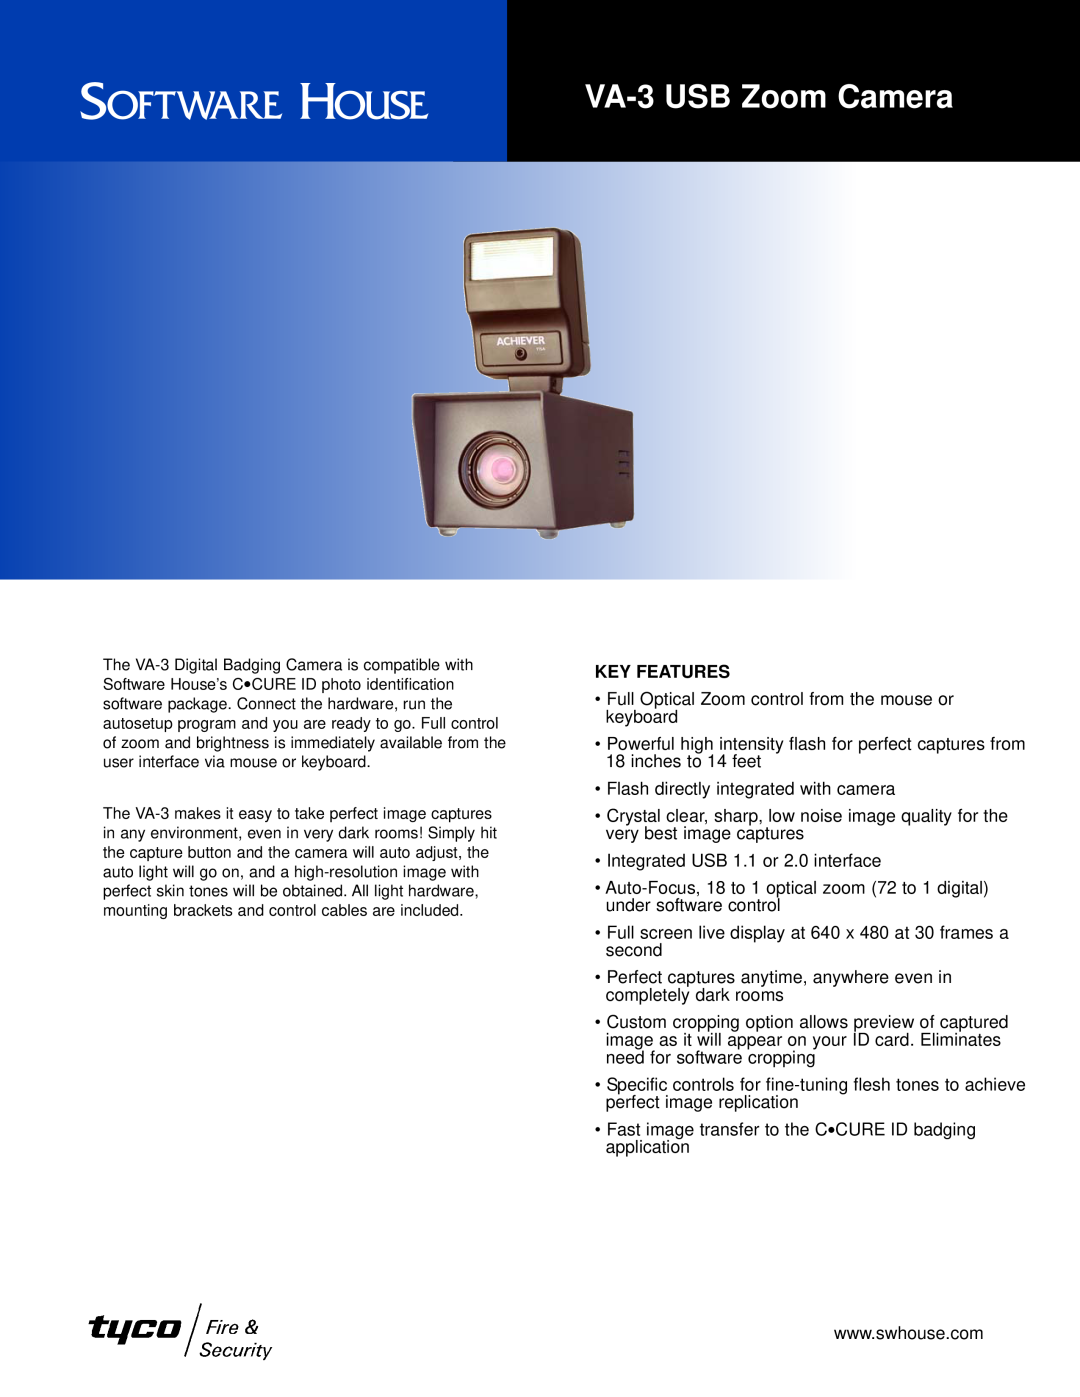 Tyco manual VA-3 USB Zoom Camera, Key Features 